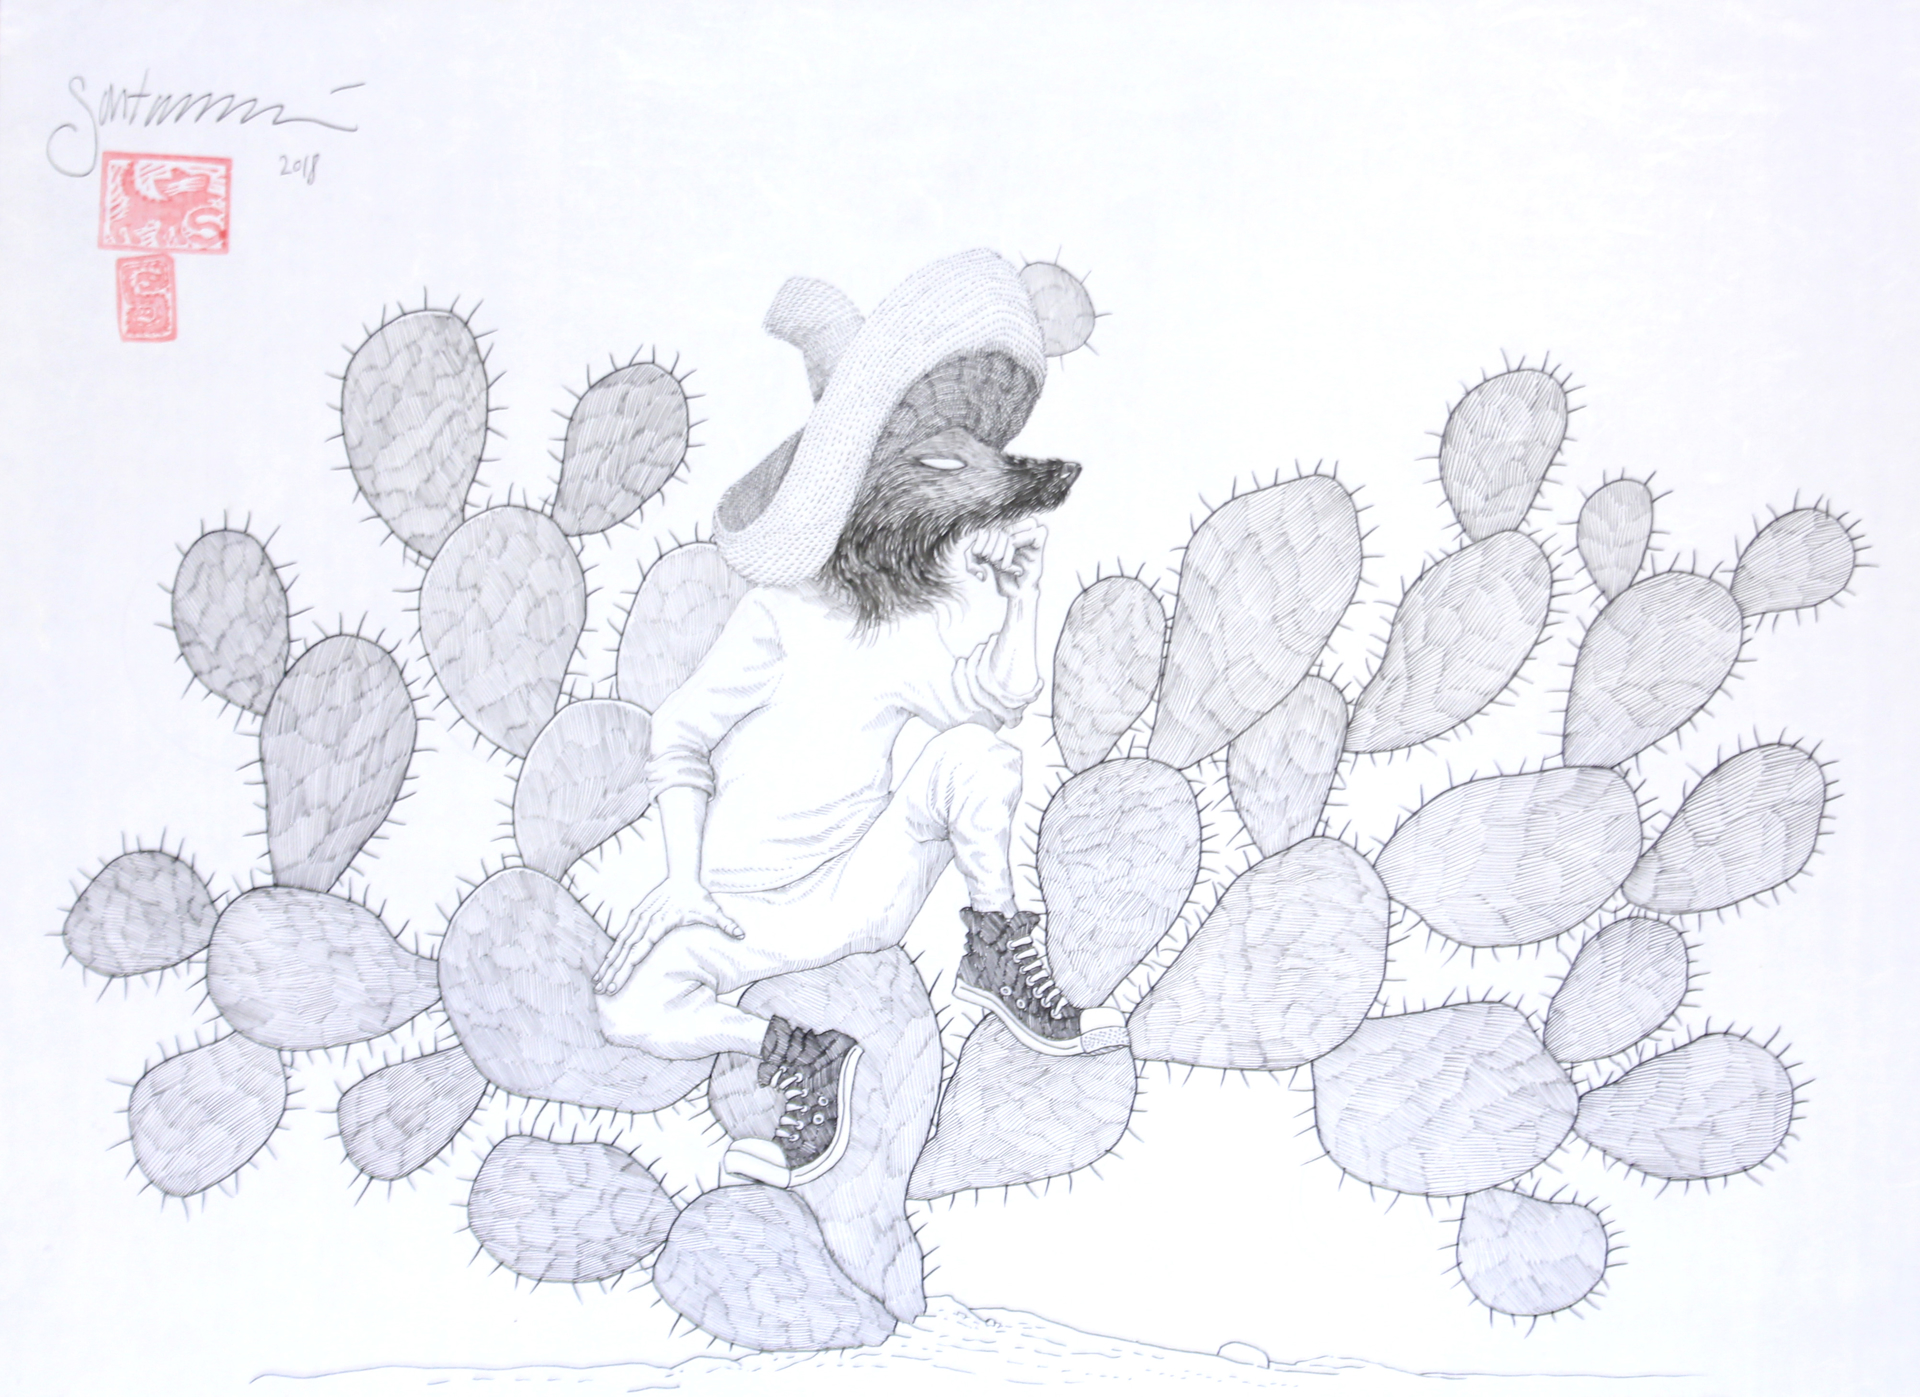 Los Nahuales (Coyote on Prickly Pear) by Sergio Sánchez Santamaría